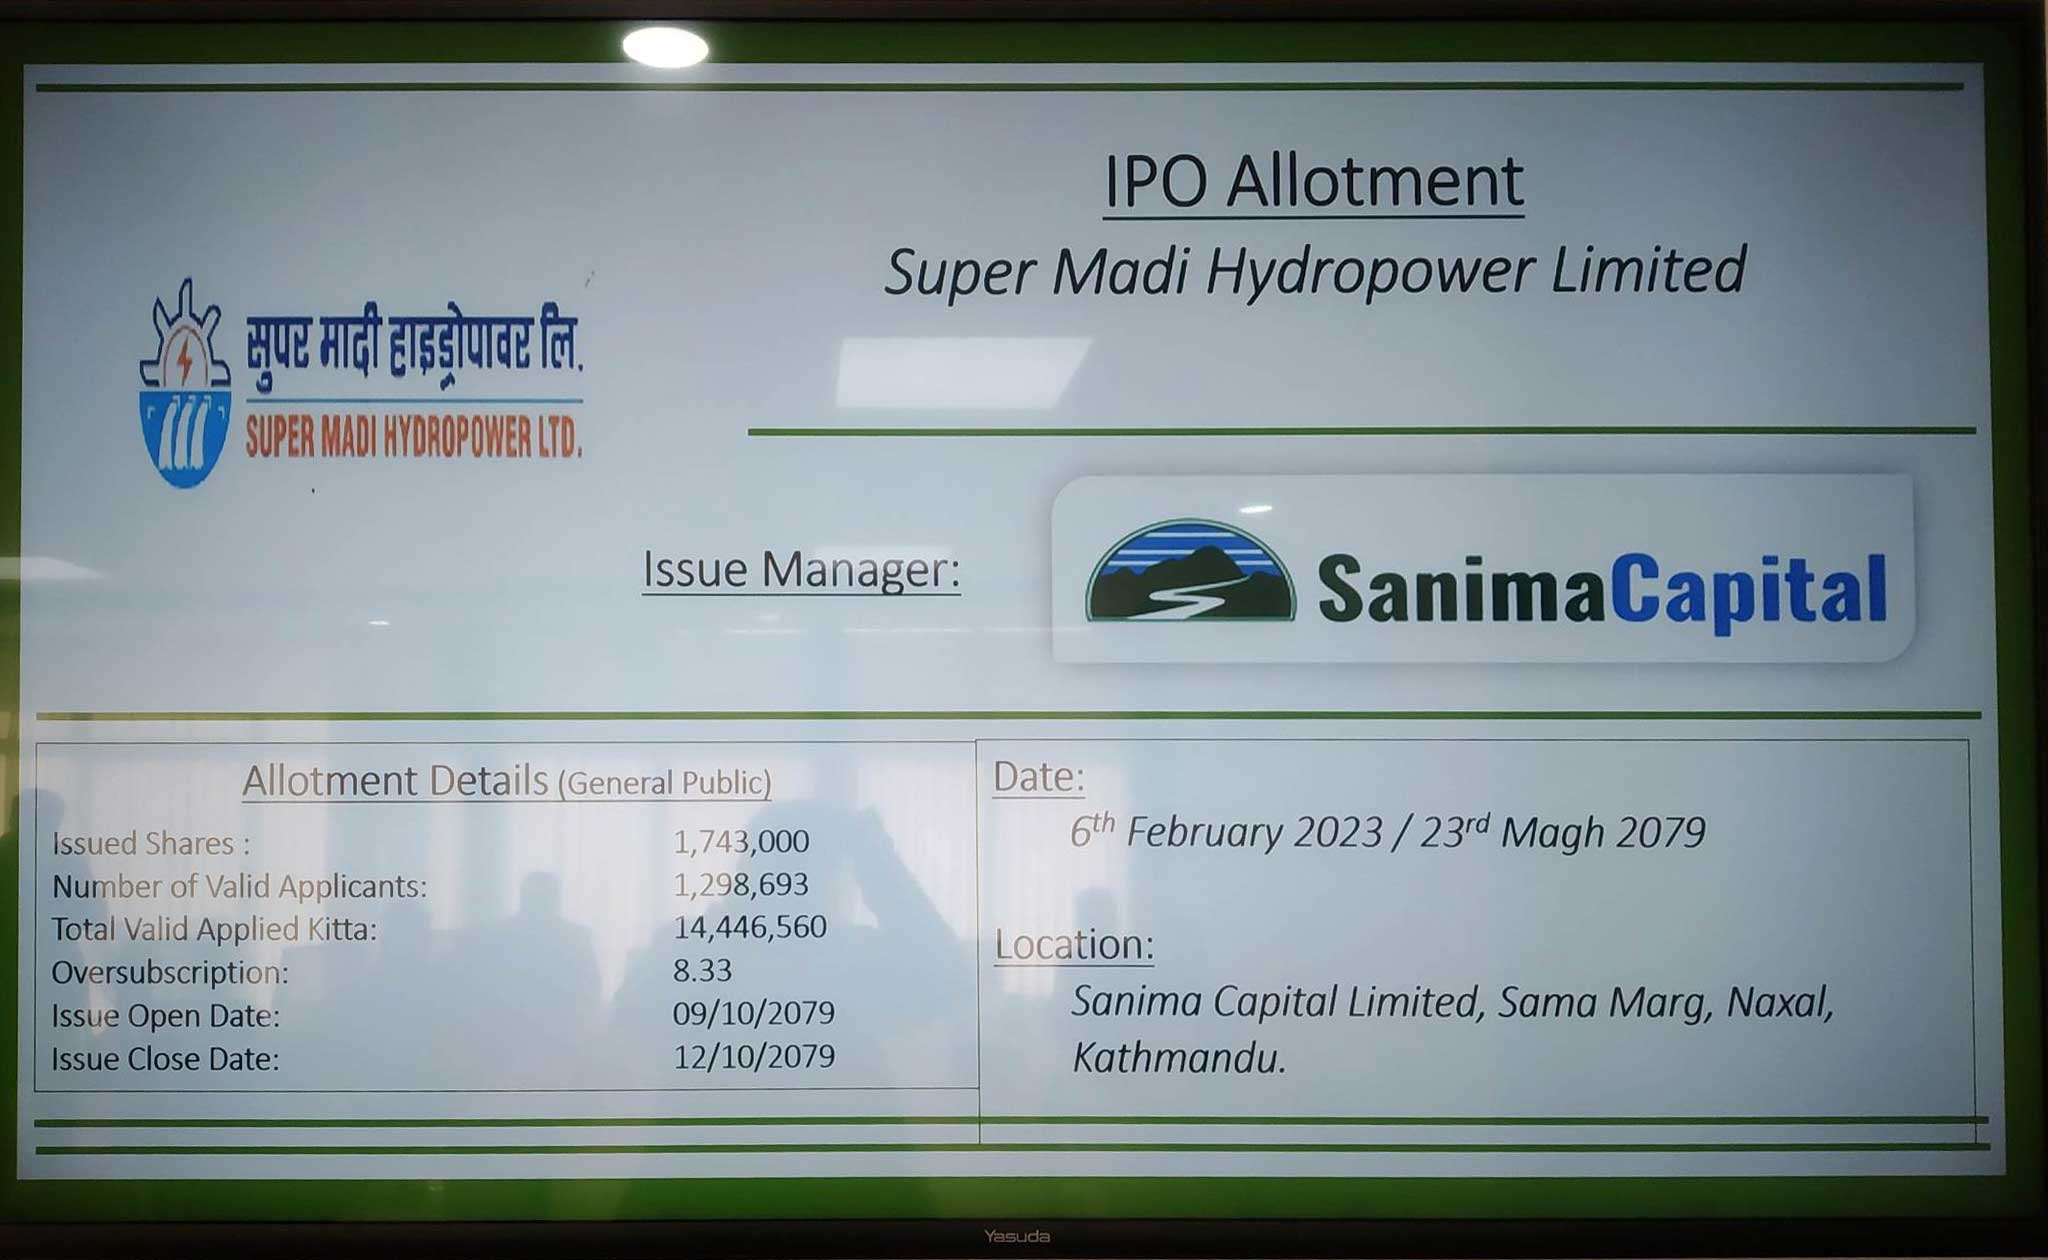 सुपर मादी हाइड्रोपावरको आईपीओ बाँडफाँट, १ लाख ७४ हजार ३०० जनाले पाए १० कित्ताका दरले शेयर